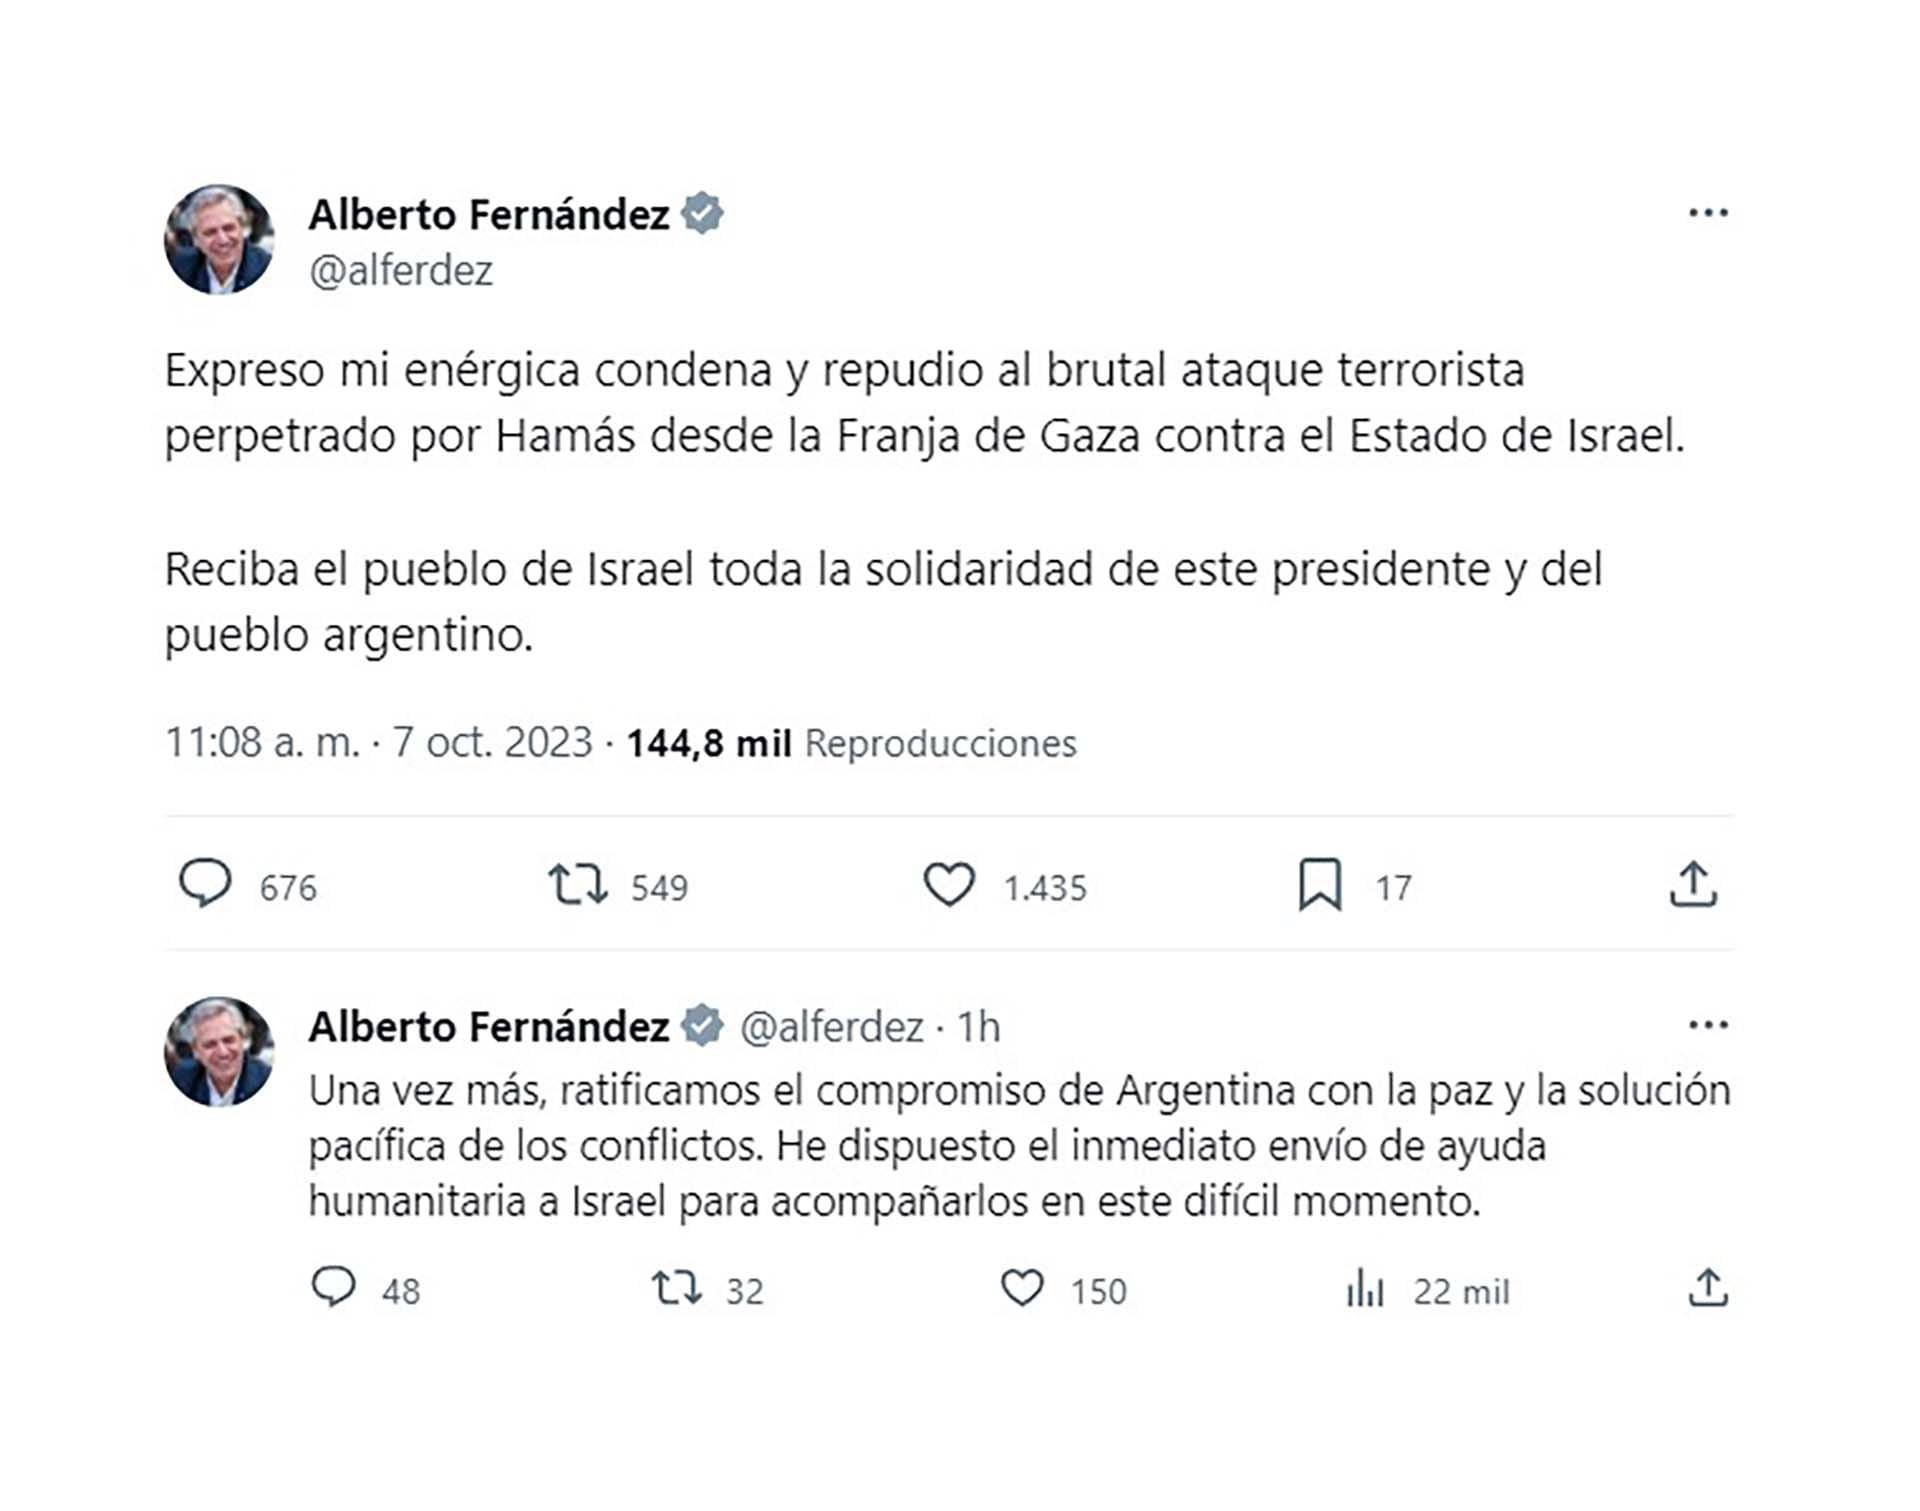 El mensaje del presidente Alberto Fernández mientras el sur de Israel es atacado de forma salvaje por el grupo islamista Hamás. 